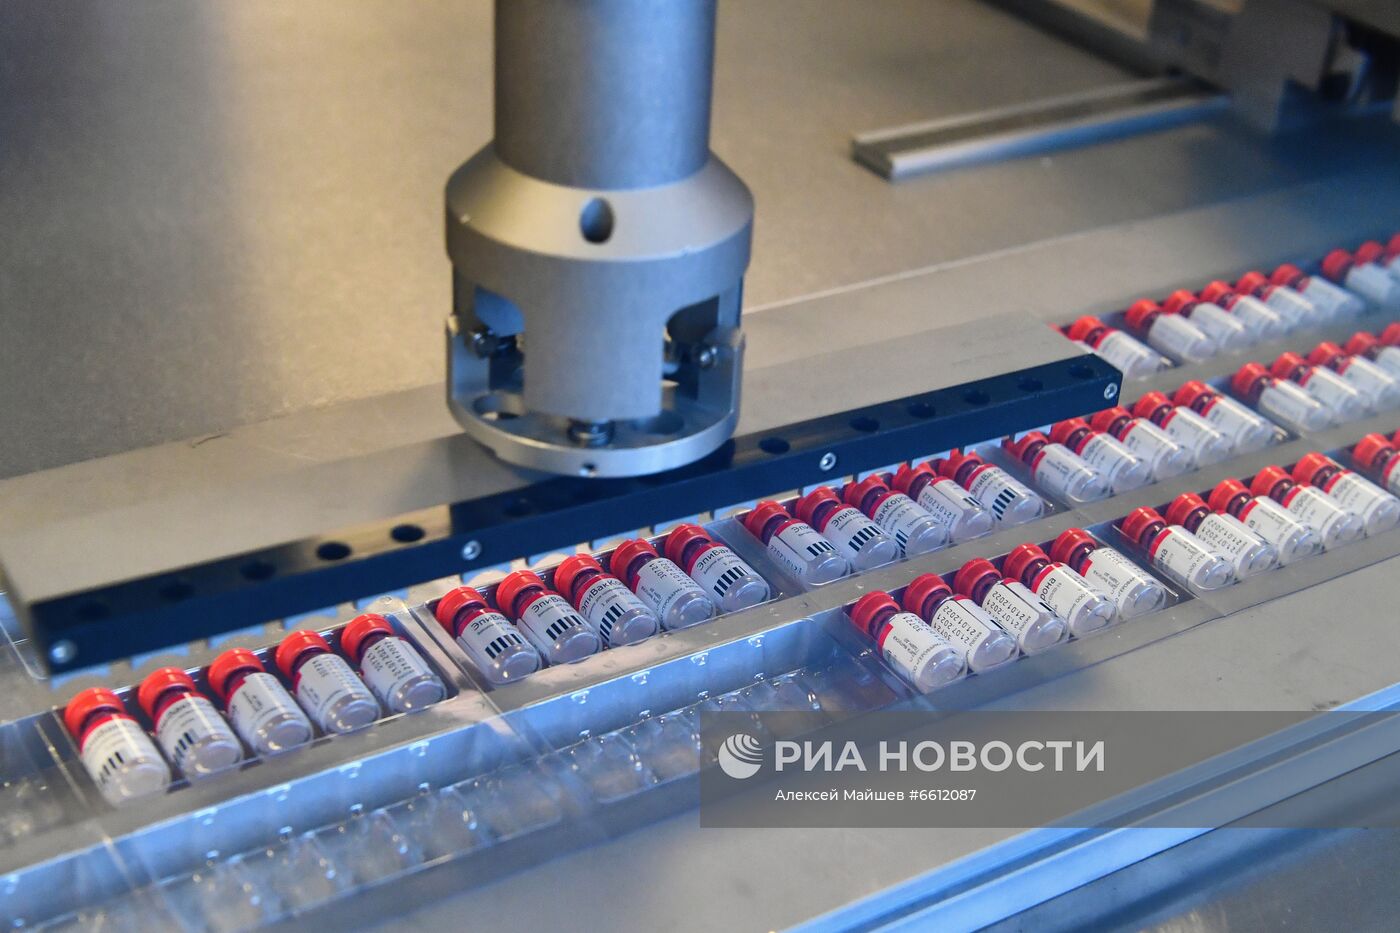 Запуск производства вакцины "ЭпиВакКорона" для профилактики COVID-19 в Подмосковье  